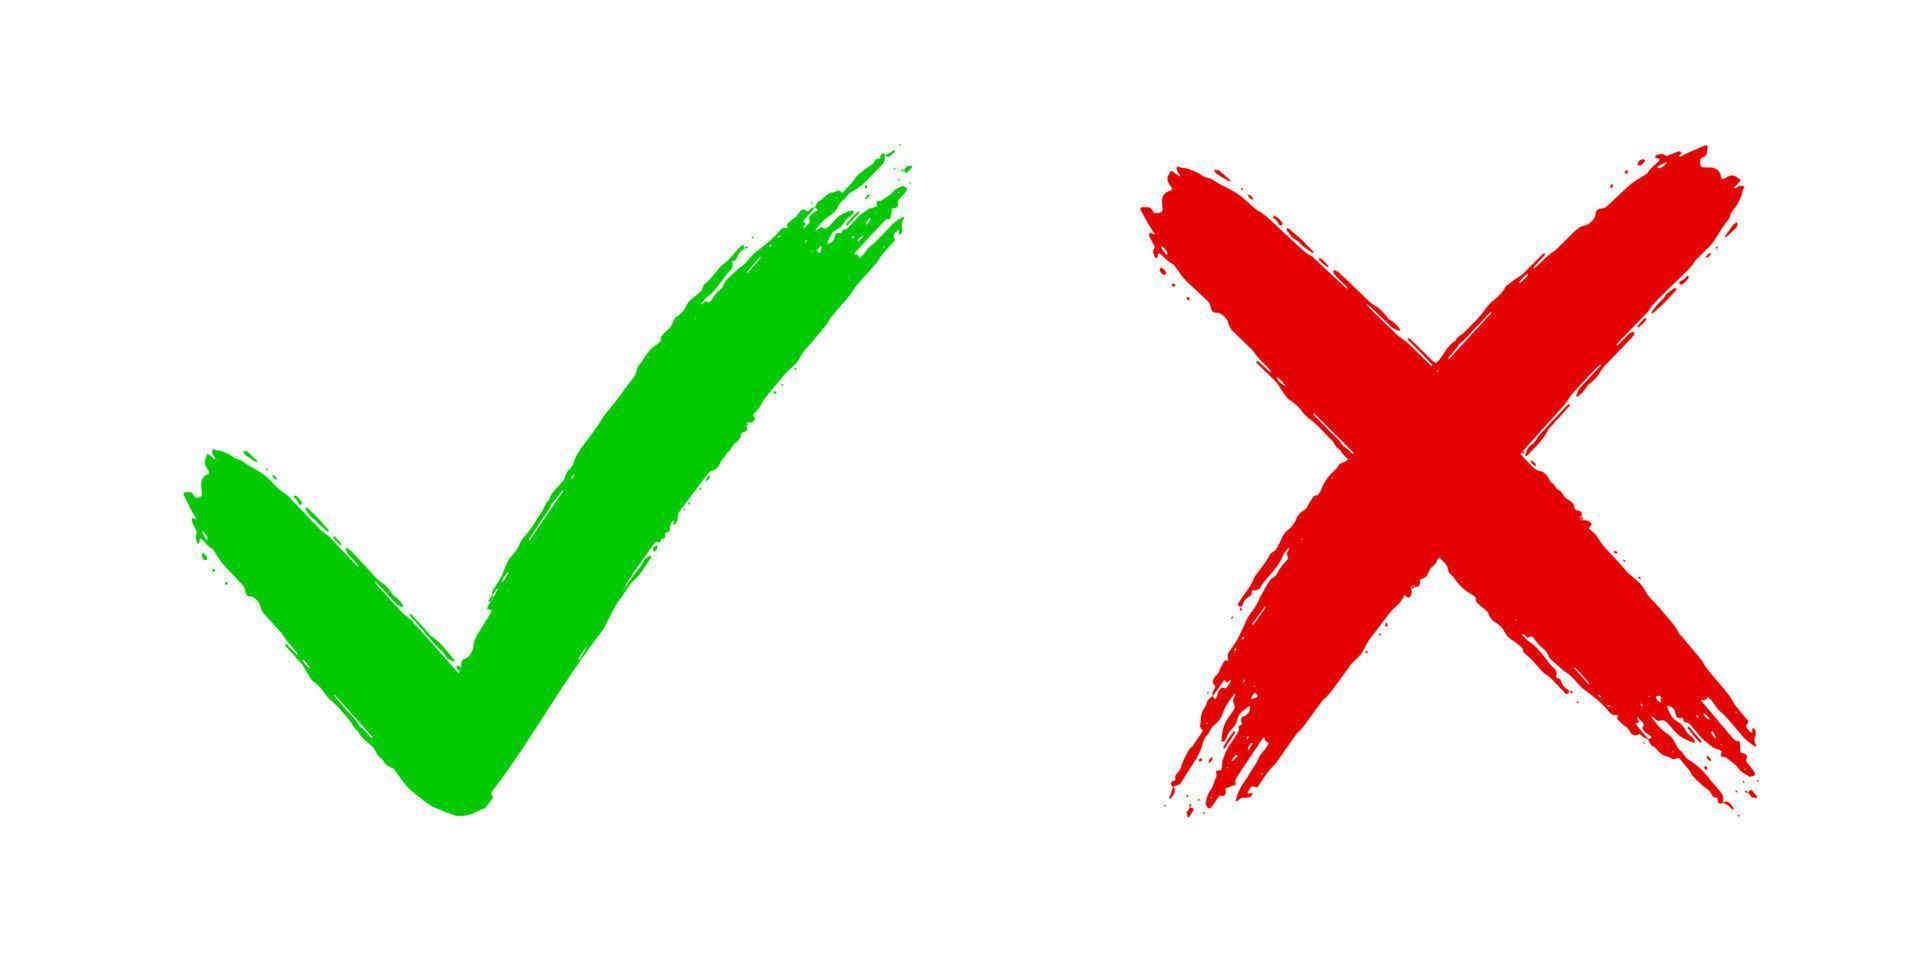 kreuzen Sie x und kreuzen Sie v an. OK Häkchen-Vektorillustration lokalisiert auf weißem Hintergrund. vektor